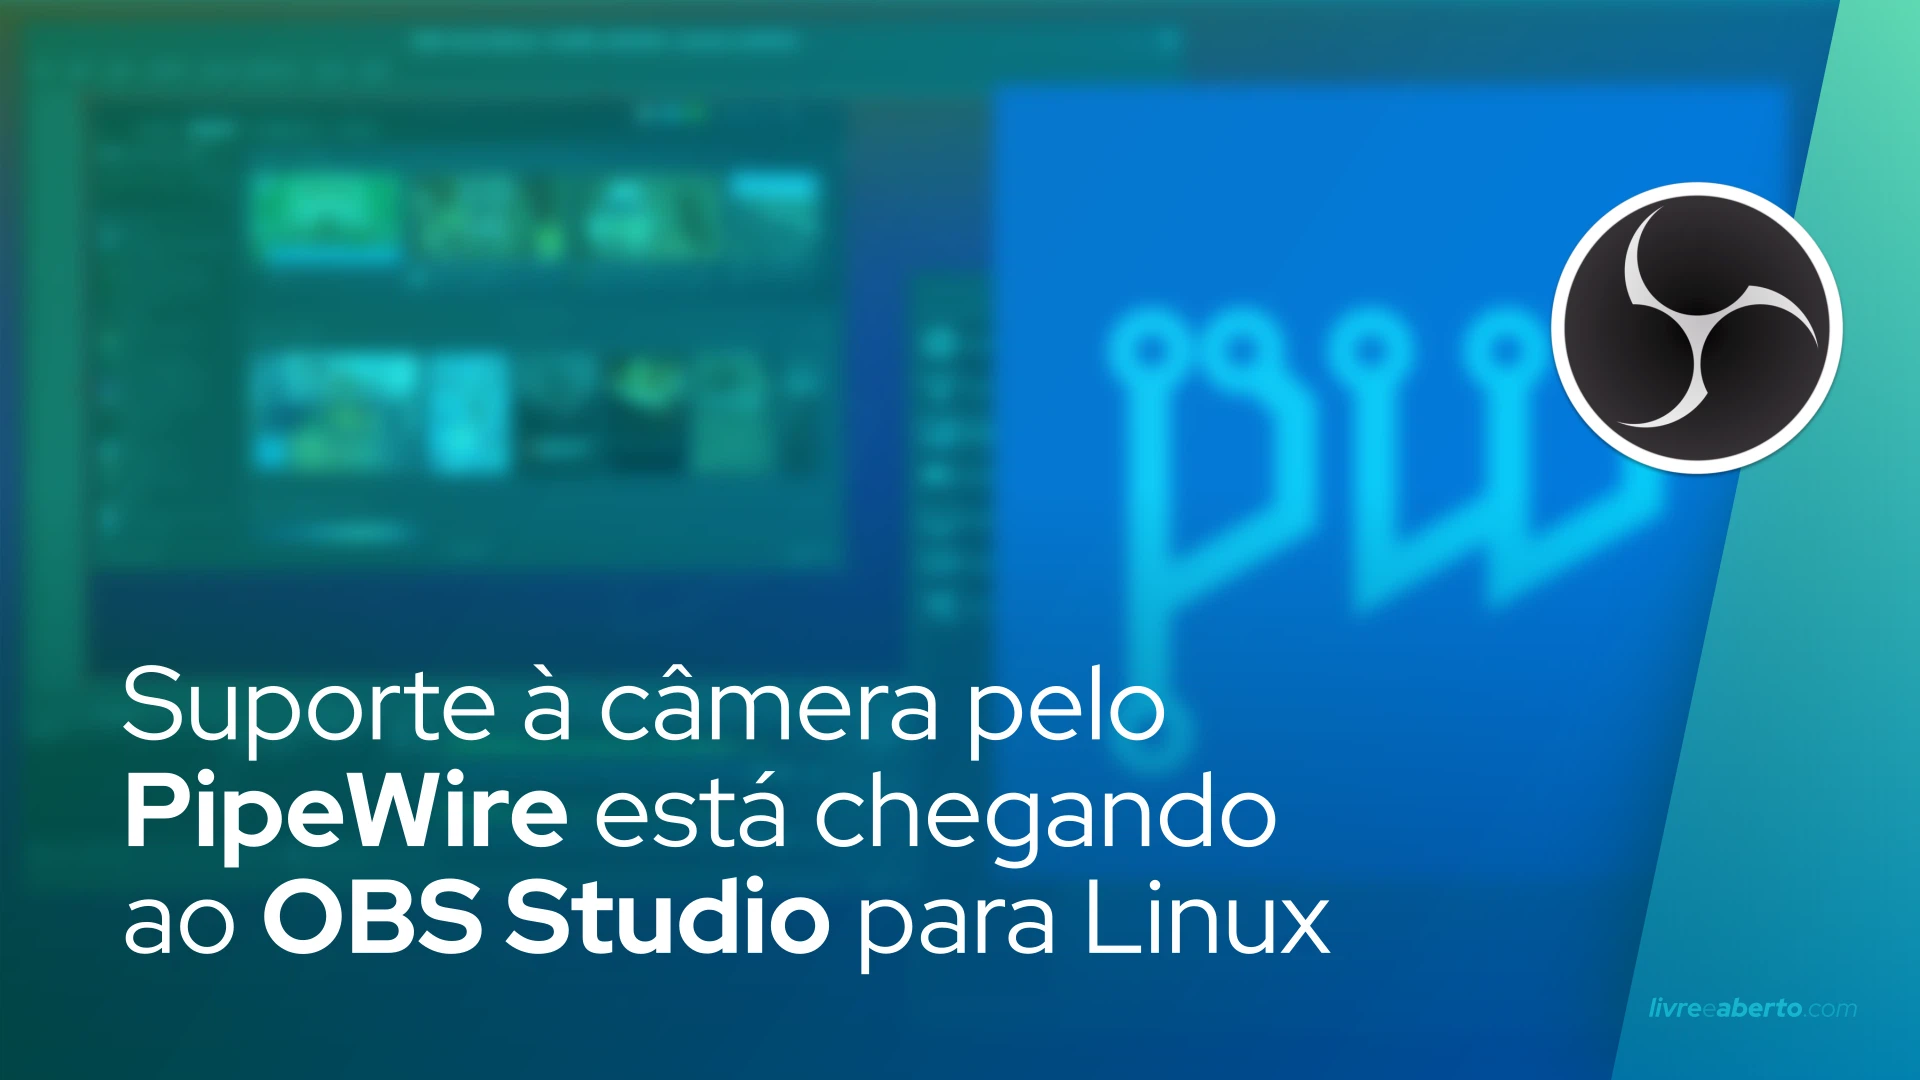 Suporte a câmera pelo PipeWire está chegando ao OBS Studio para desktops Linux